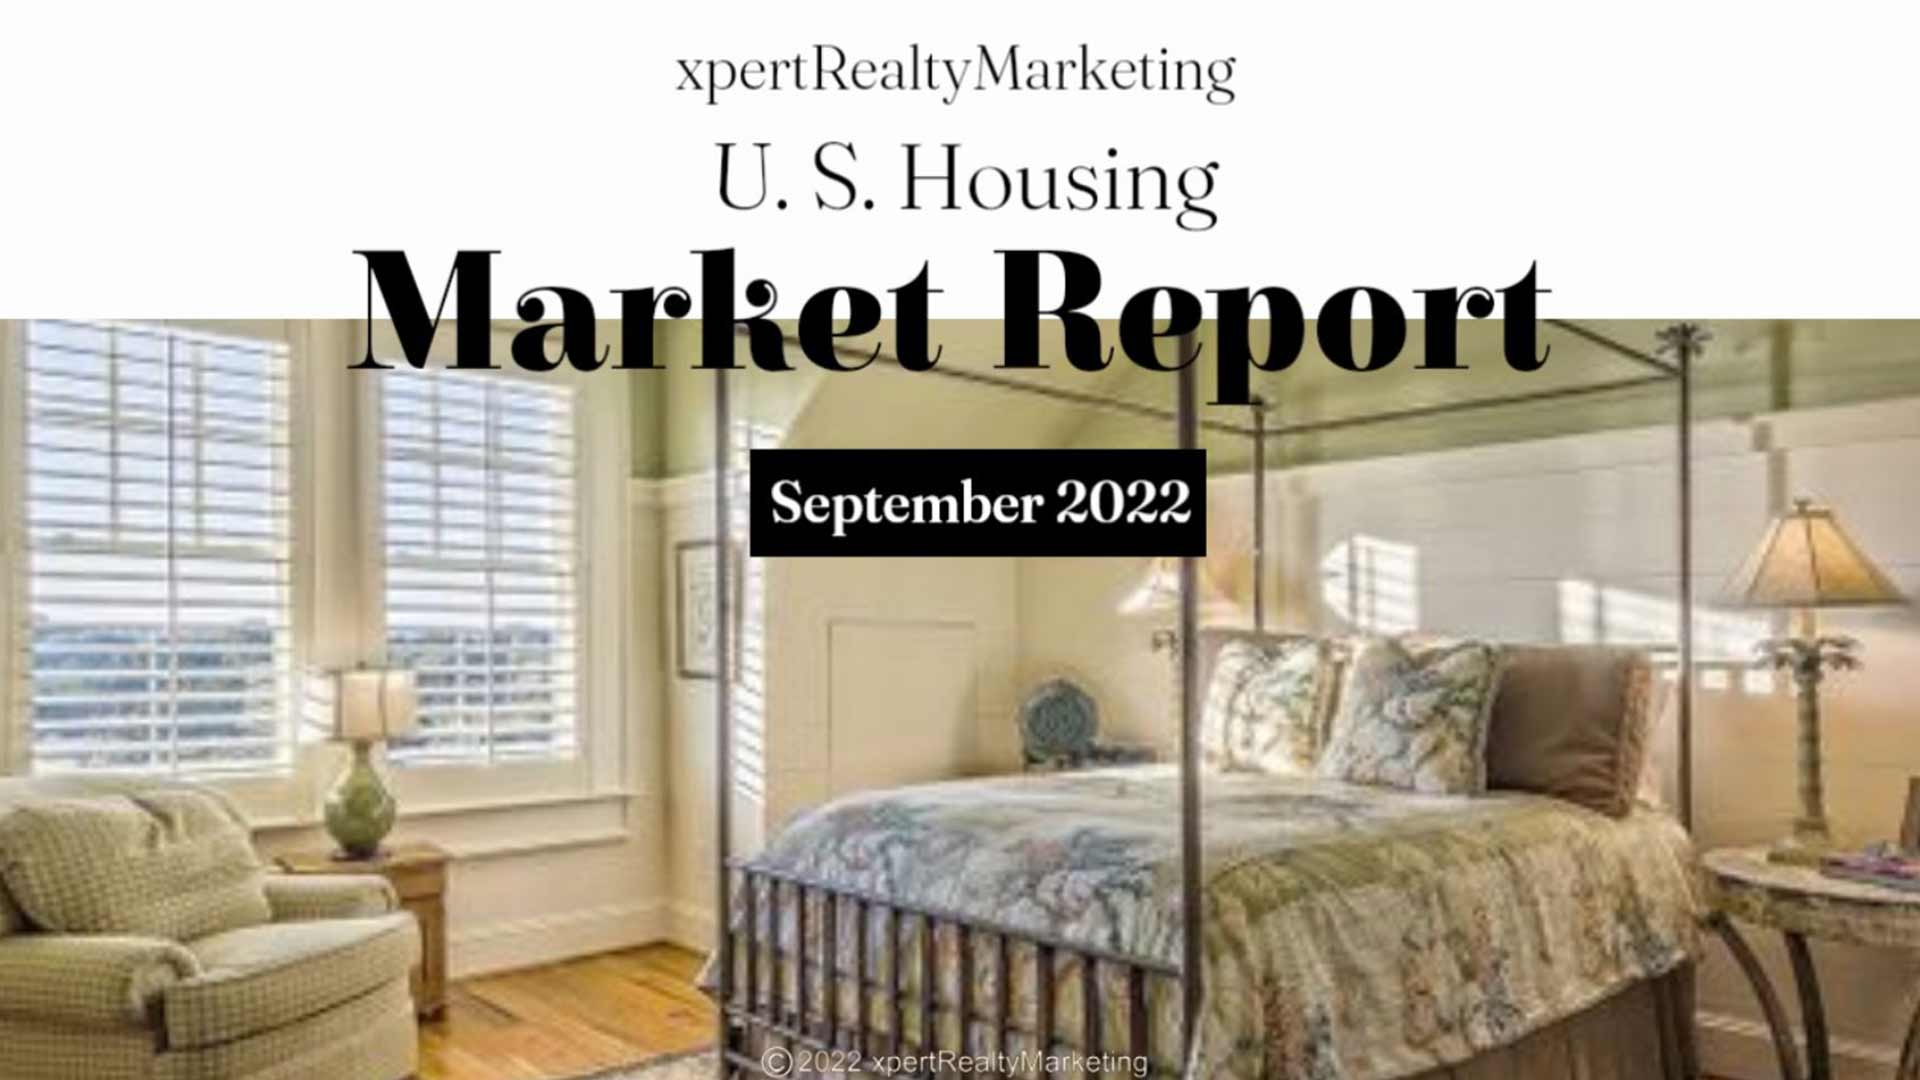 U.S. Housing Market Report for September 2022